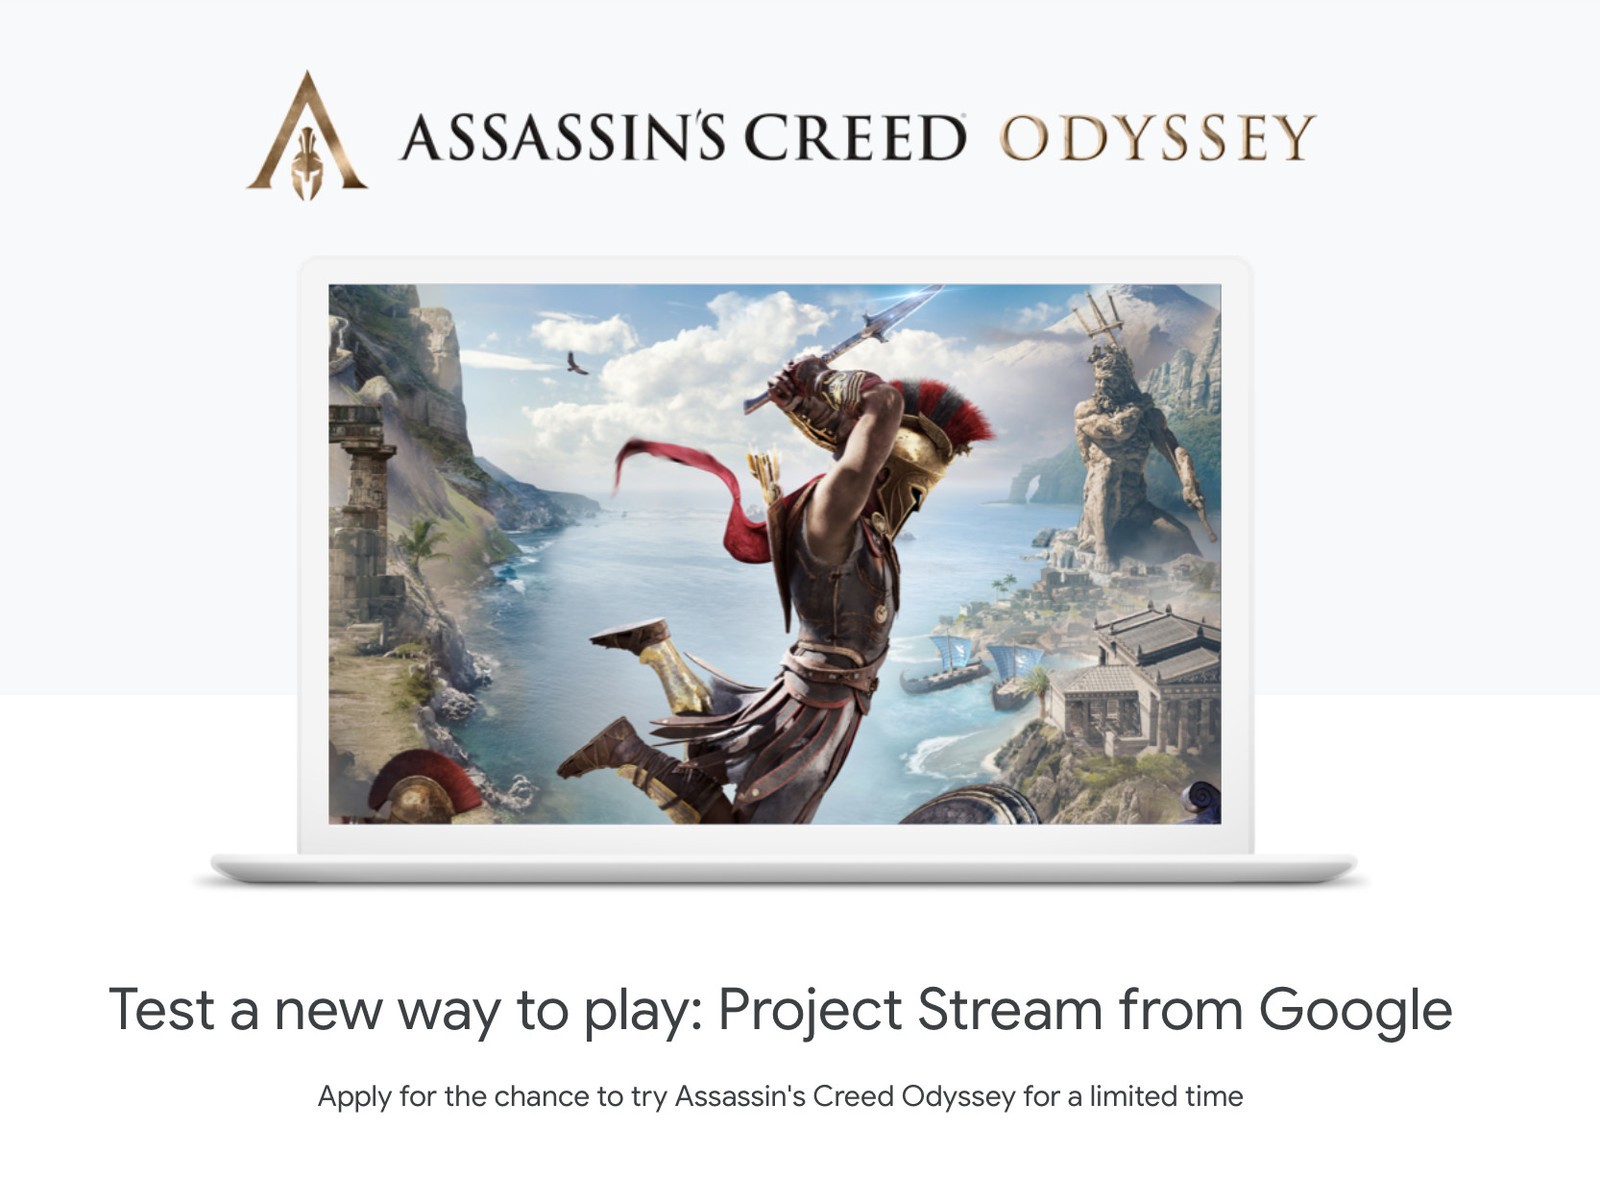 Google’ın çevrim içi oyun akış testleri Assassin’s Creed Odyssey ile yapılacak